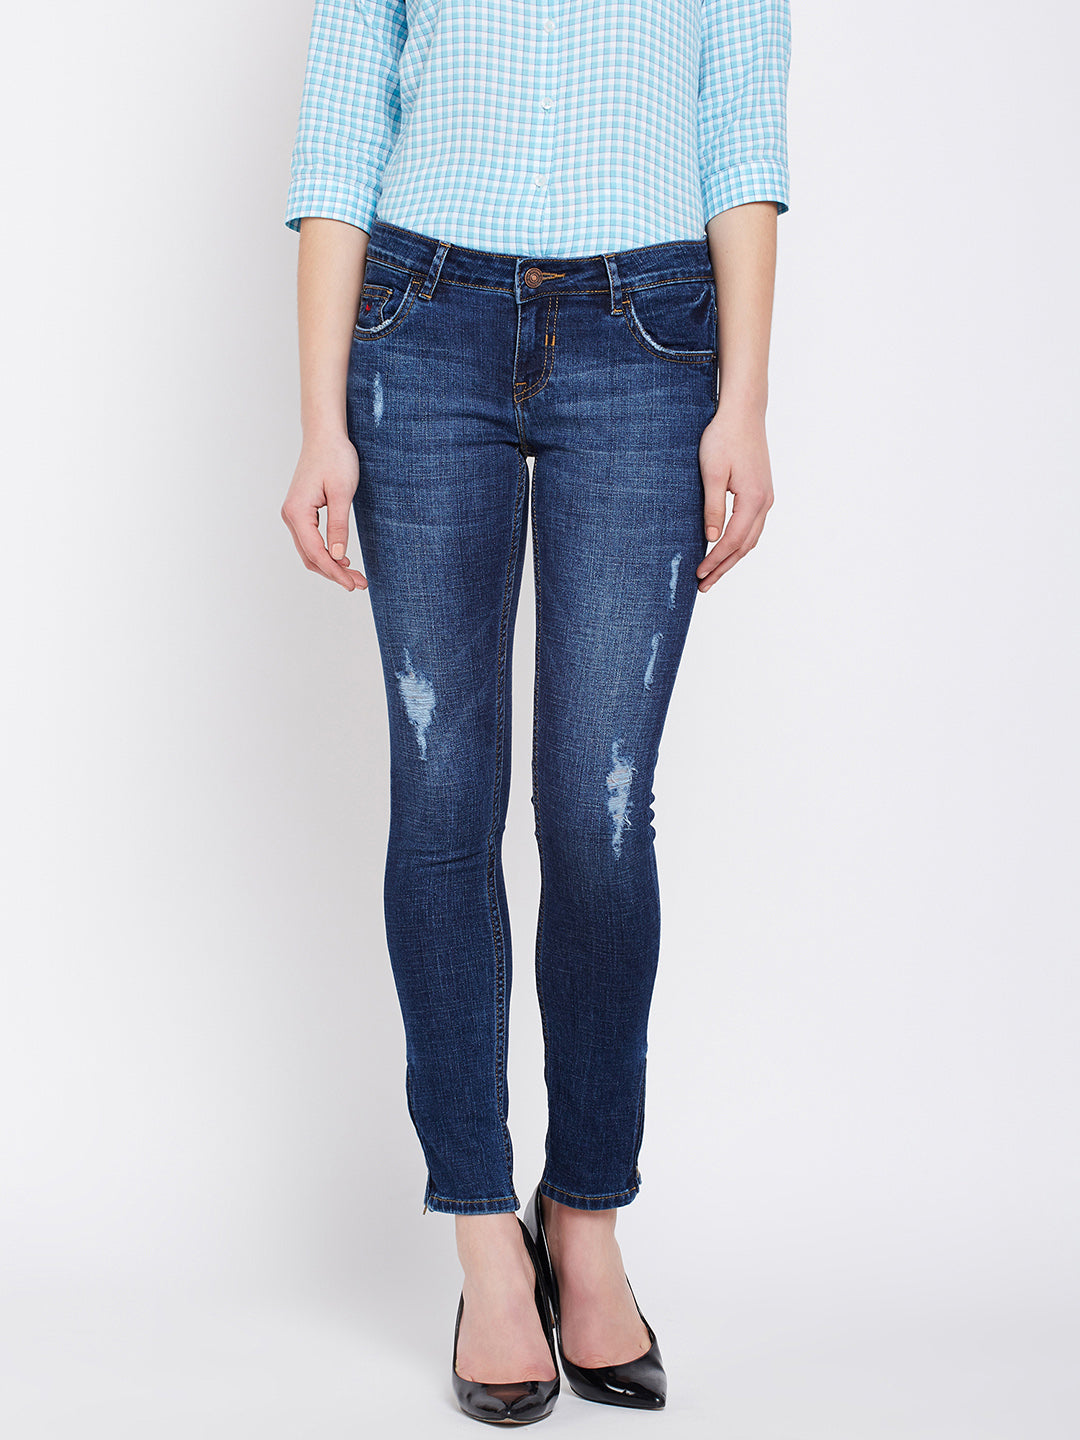 Ripped Denim - Women Jeans